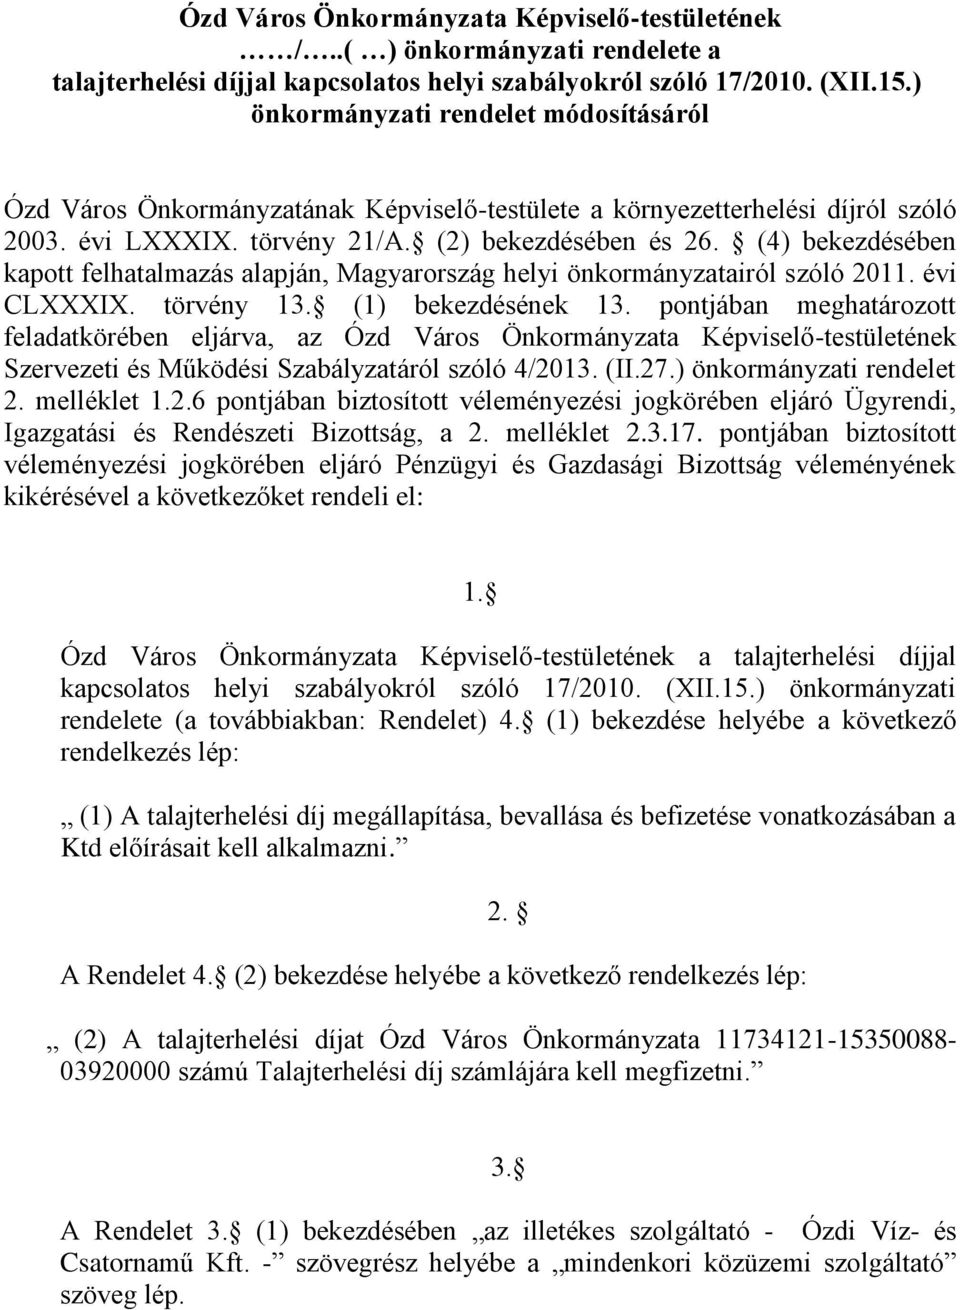 (4) bekezdésében kapott felhatalmazás alapján, Magyarország helyi önkormányzatairól szóló 2011. évi CLXXXIX. törvény 13. (1) bekezdésének 13.